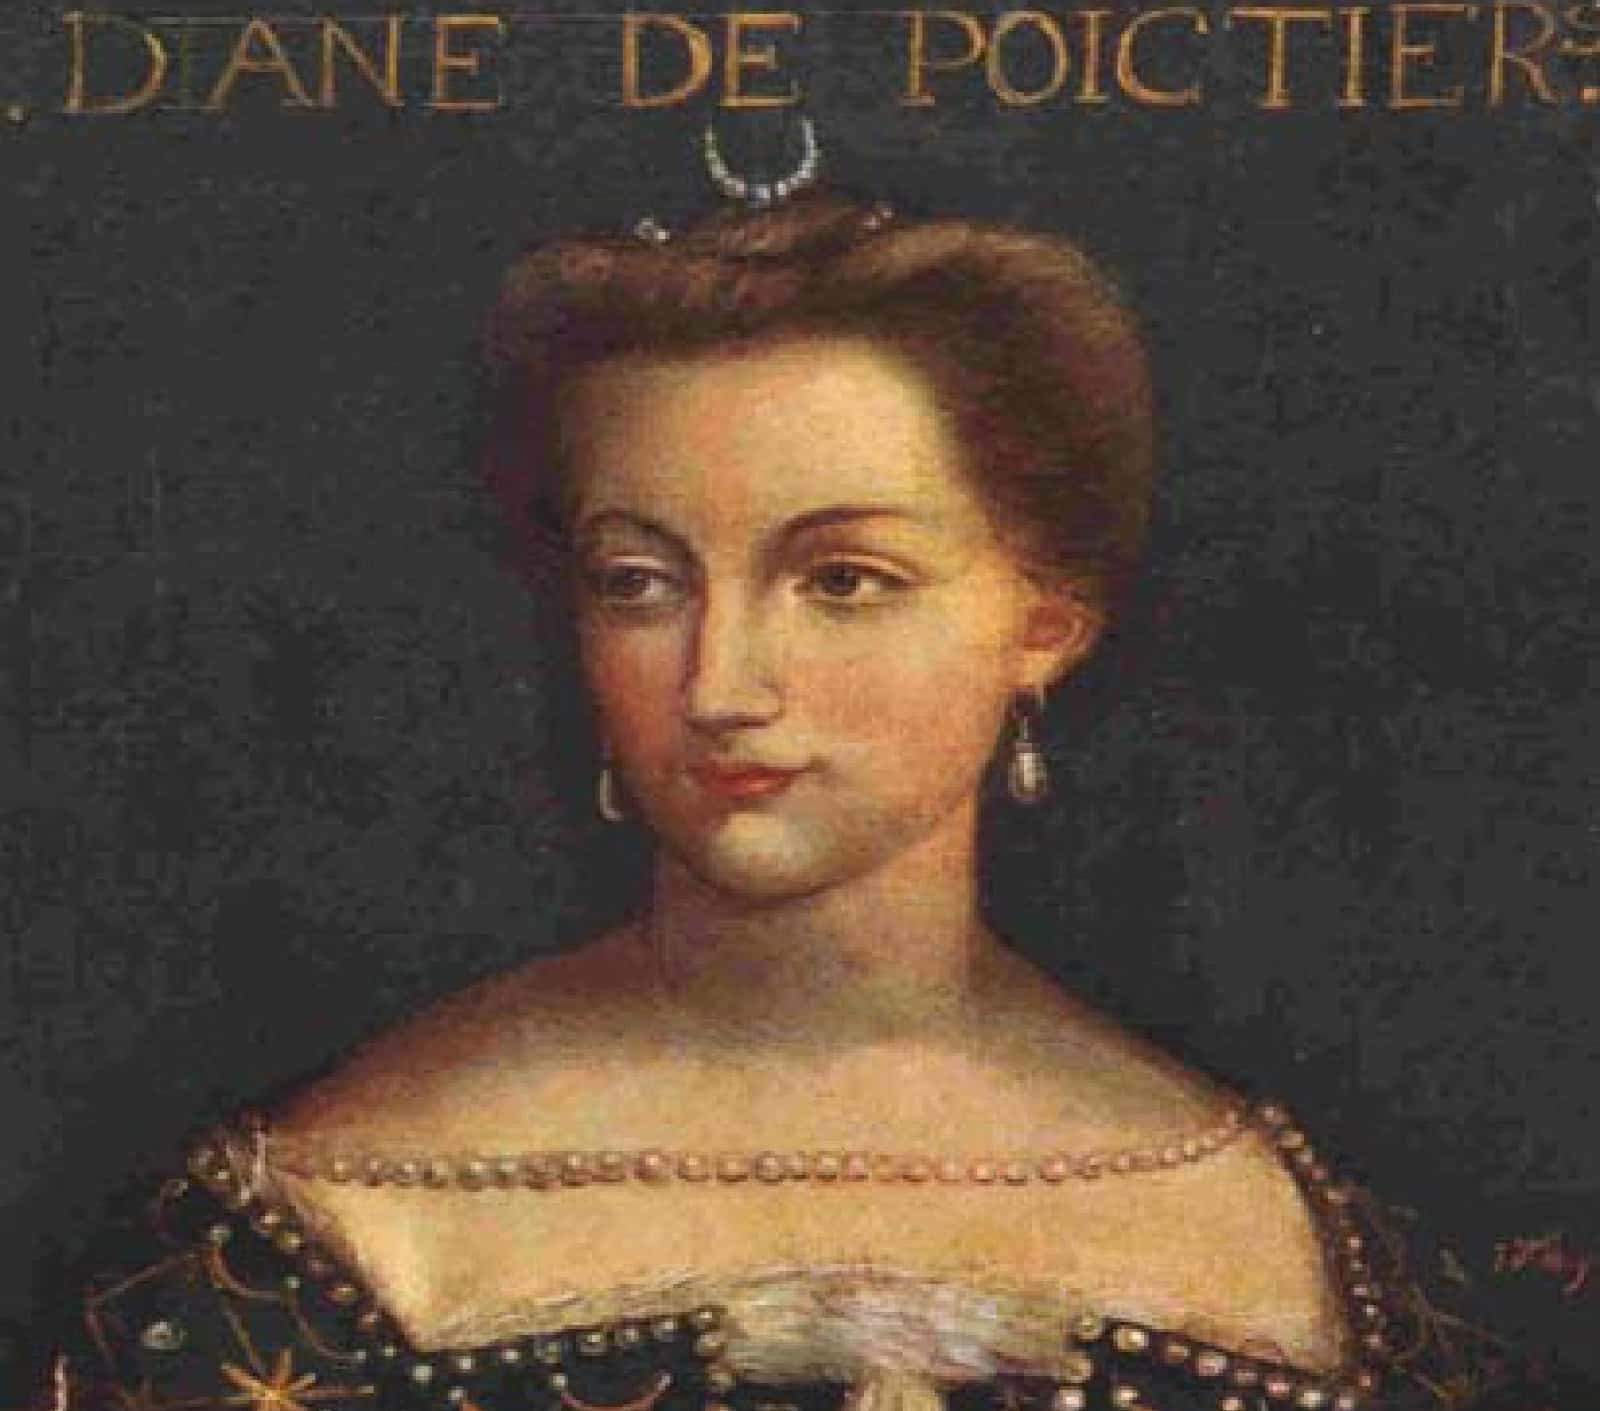 Catherine de Medici facts